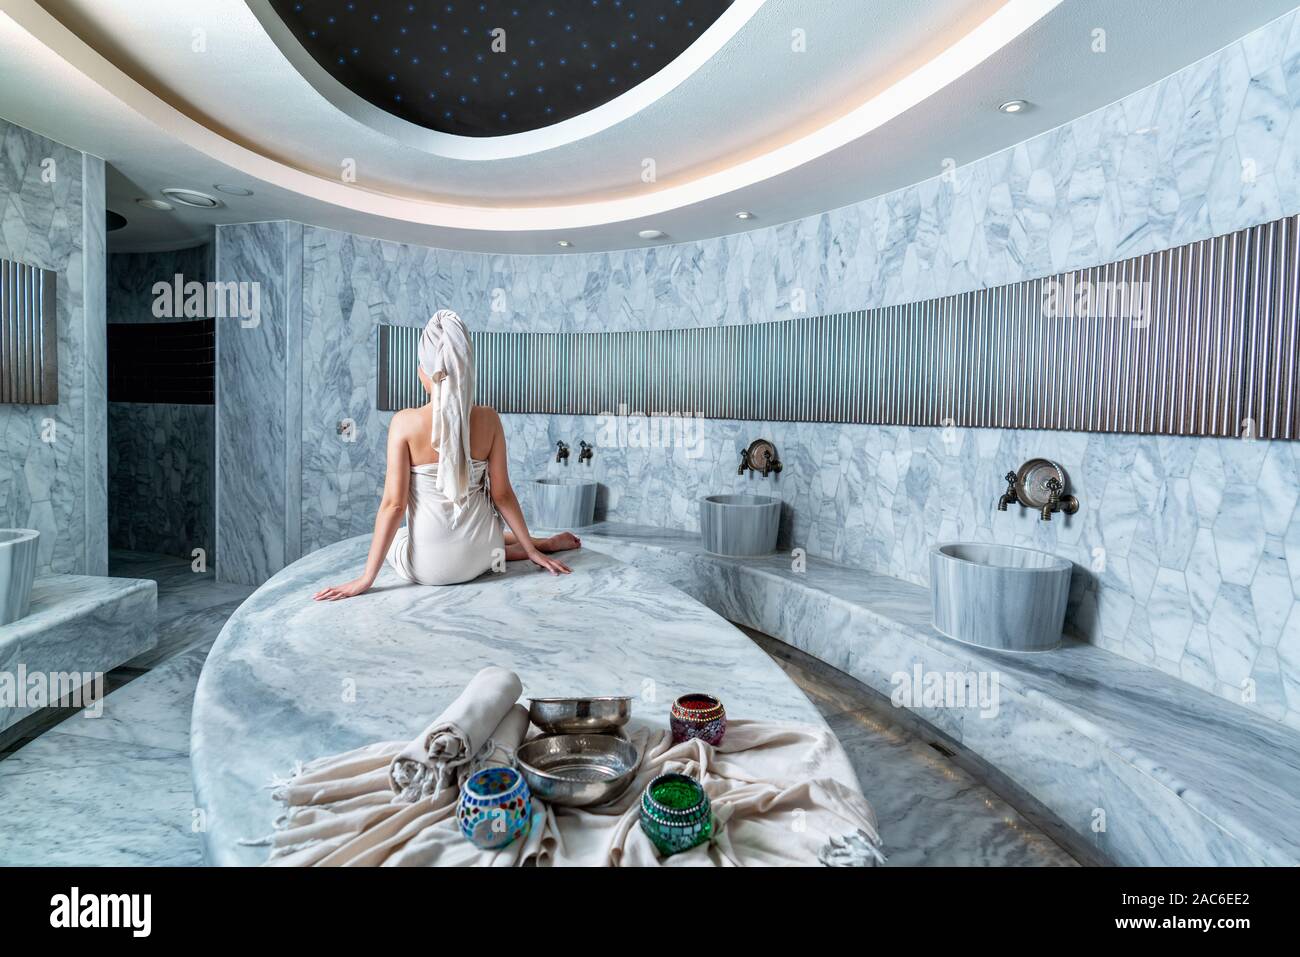 Femme attendant de se baigner dans cadre authentique dans un bain turc. Banque D'Images